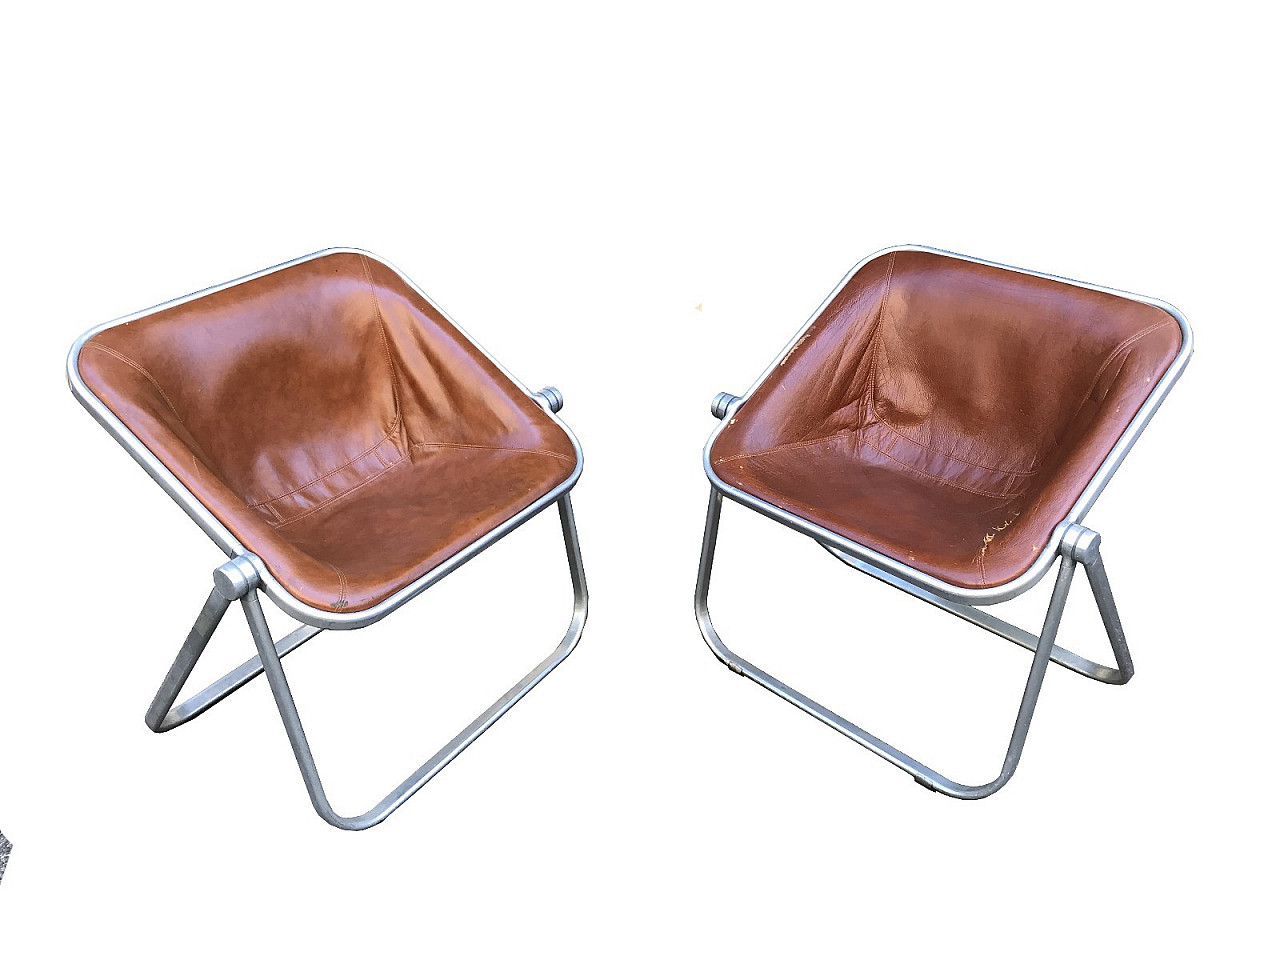 Plona chairs by Giancarlo Piretti, '70s 1